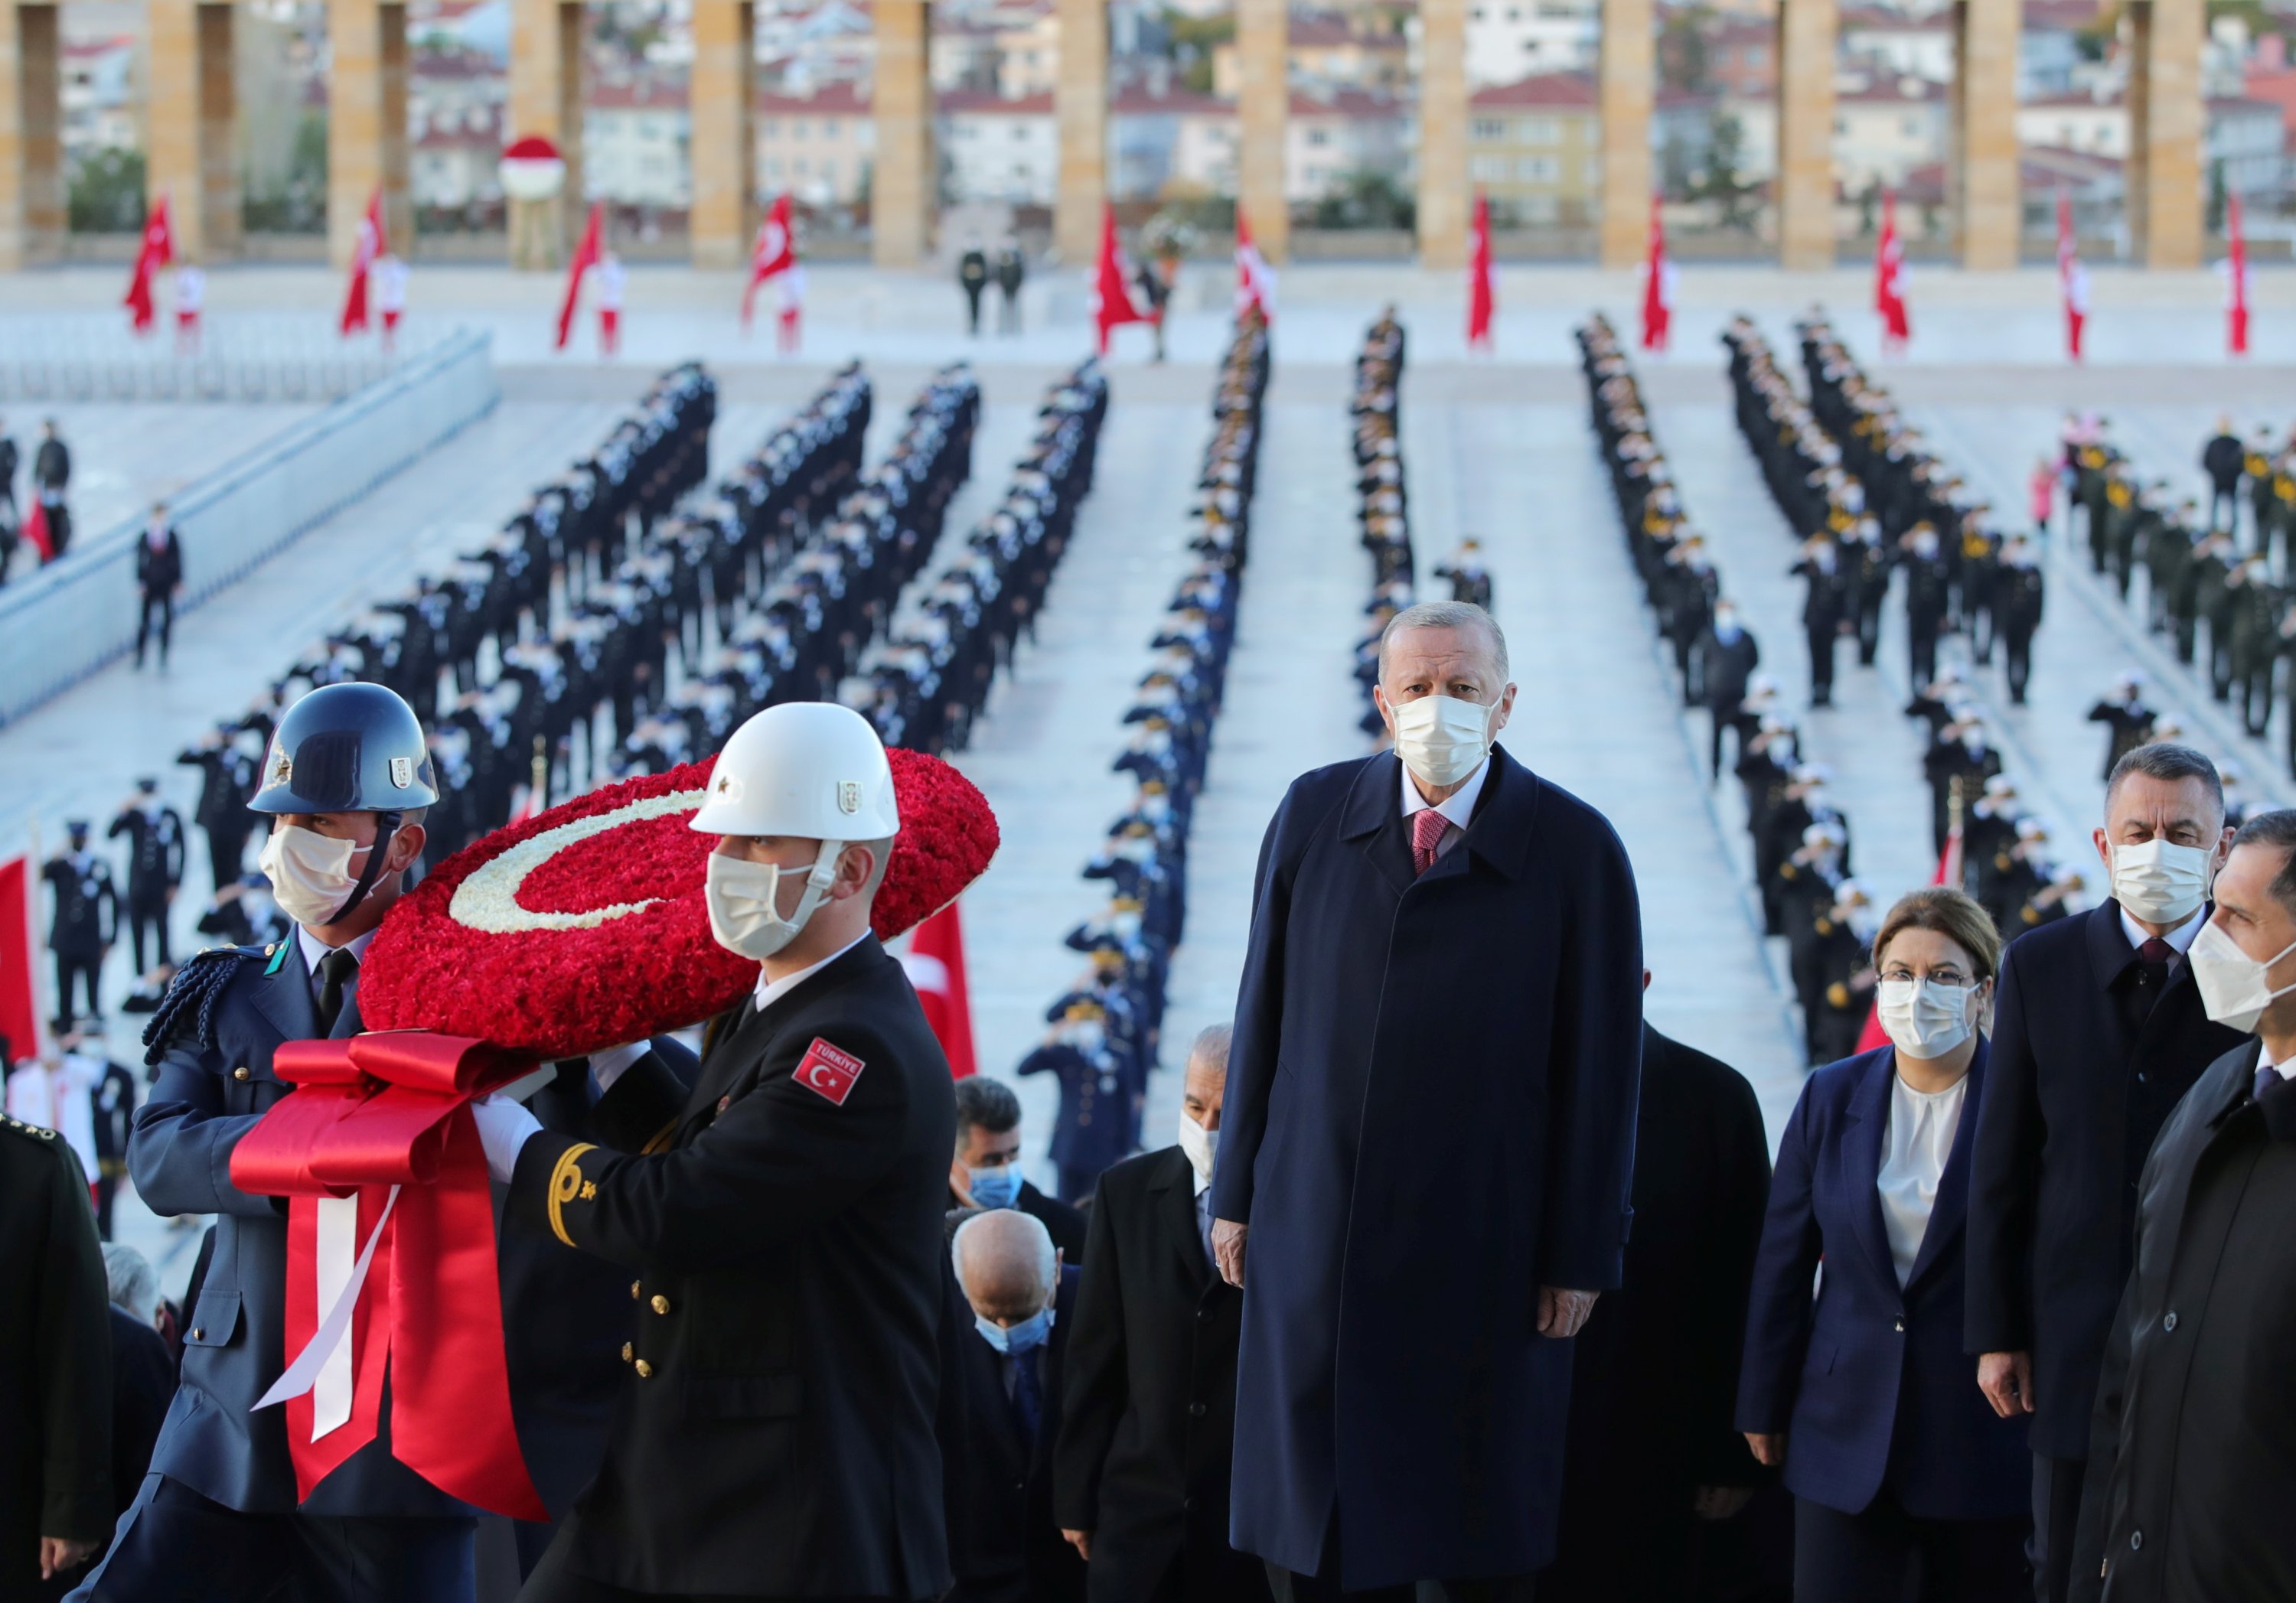 President Recep Tayyip Erdoğan attends a ceremony at Anıtkabir marking the 83rd death anniversary of modern Turkey's founder Mustafa Kemal Atatürk in Ankara, Turkey, Nov. 10, 2021. (Presidential Press Office/Handout via Reuters)